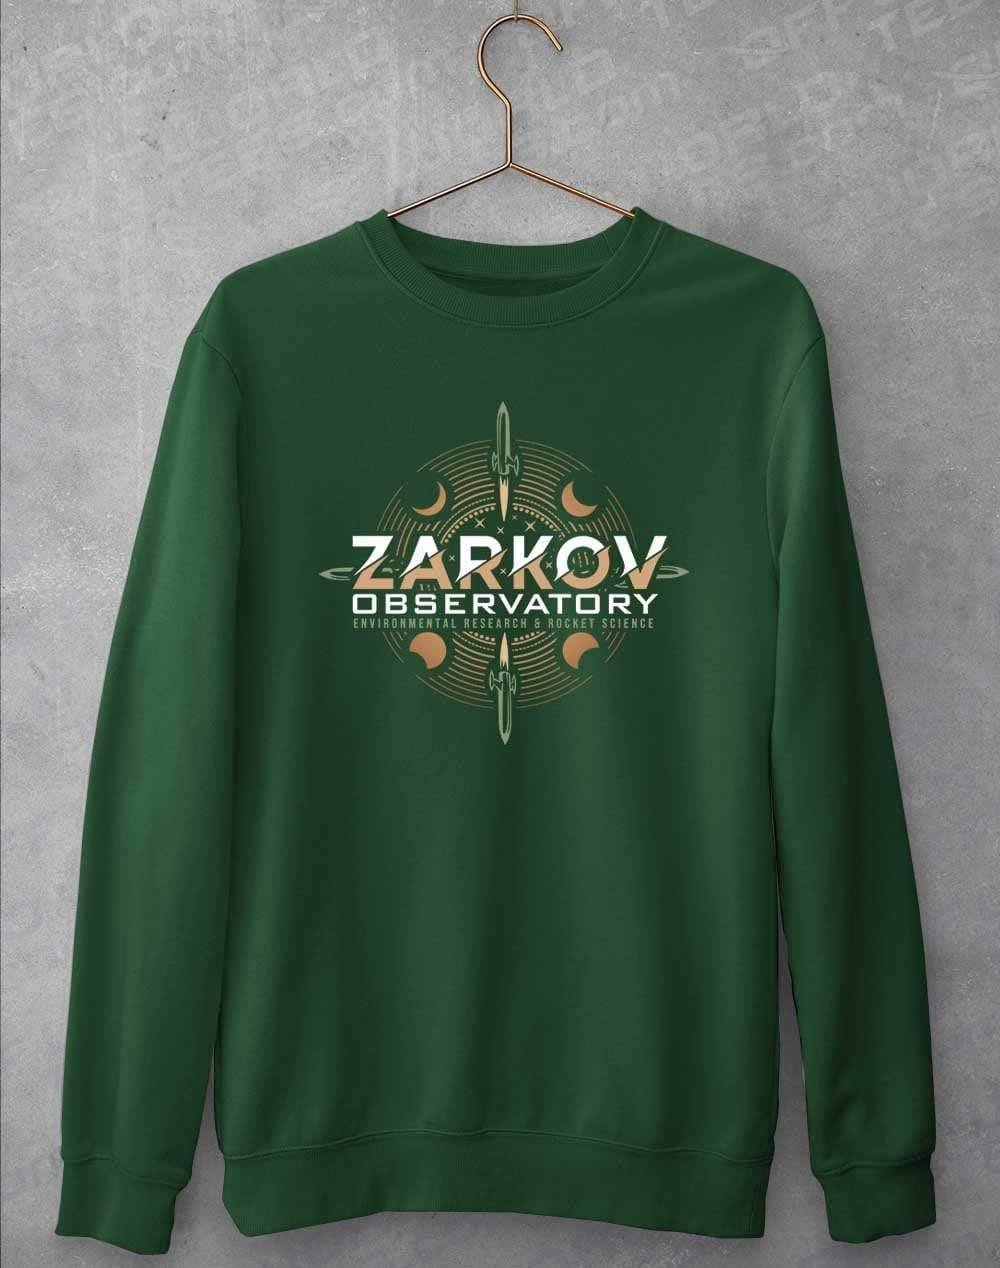 Zarkov Observatory Sweatshirt S / Bottle Green  - Off World Tees